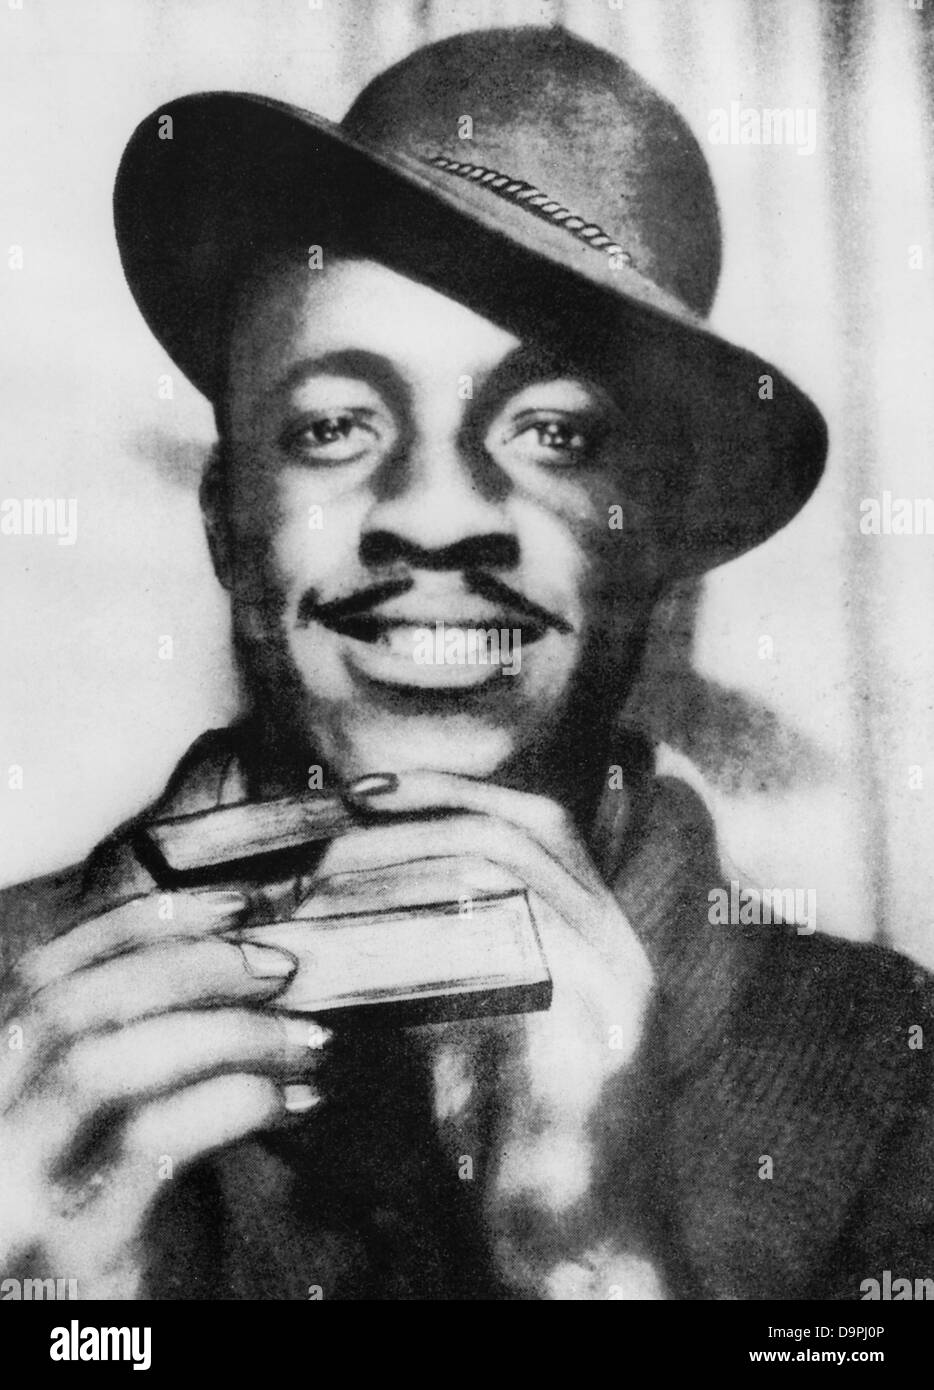 JOHN LEE CURTIS 'Sonny Boy' WILLIAMSON (1914-1948), l'harmoniciste de blues américain. Banque D'Images